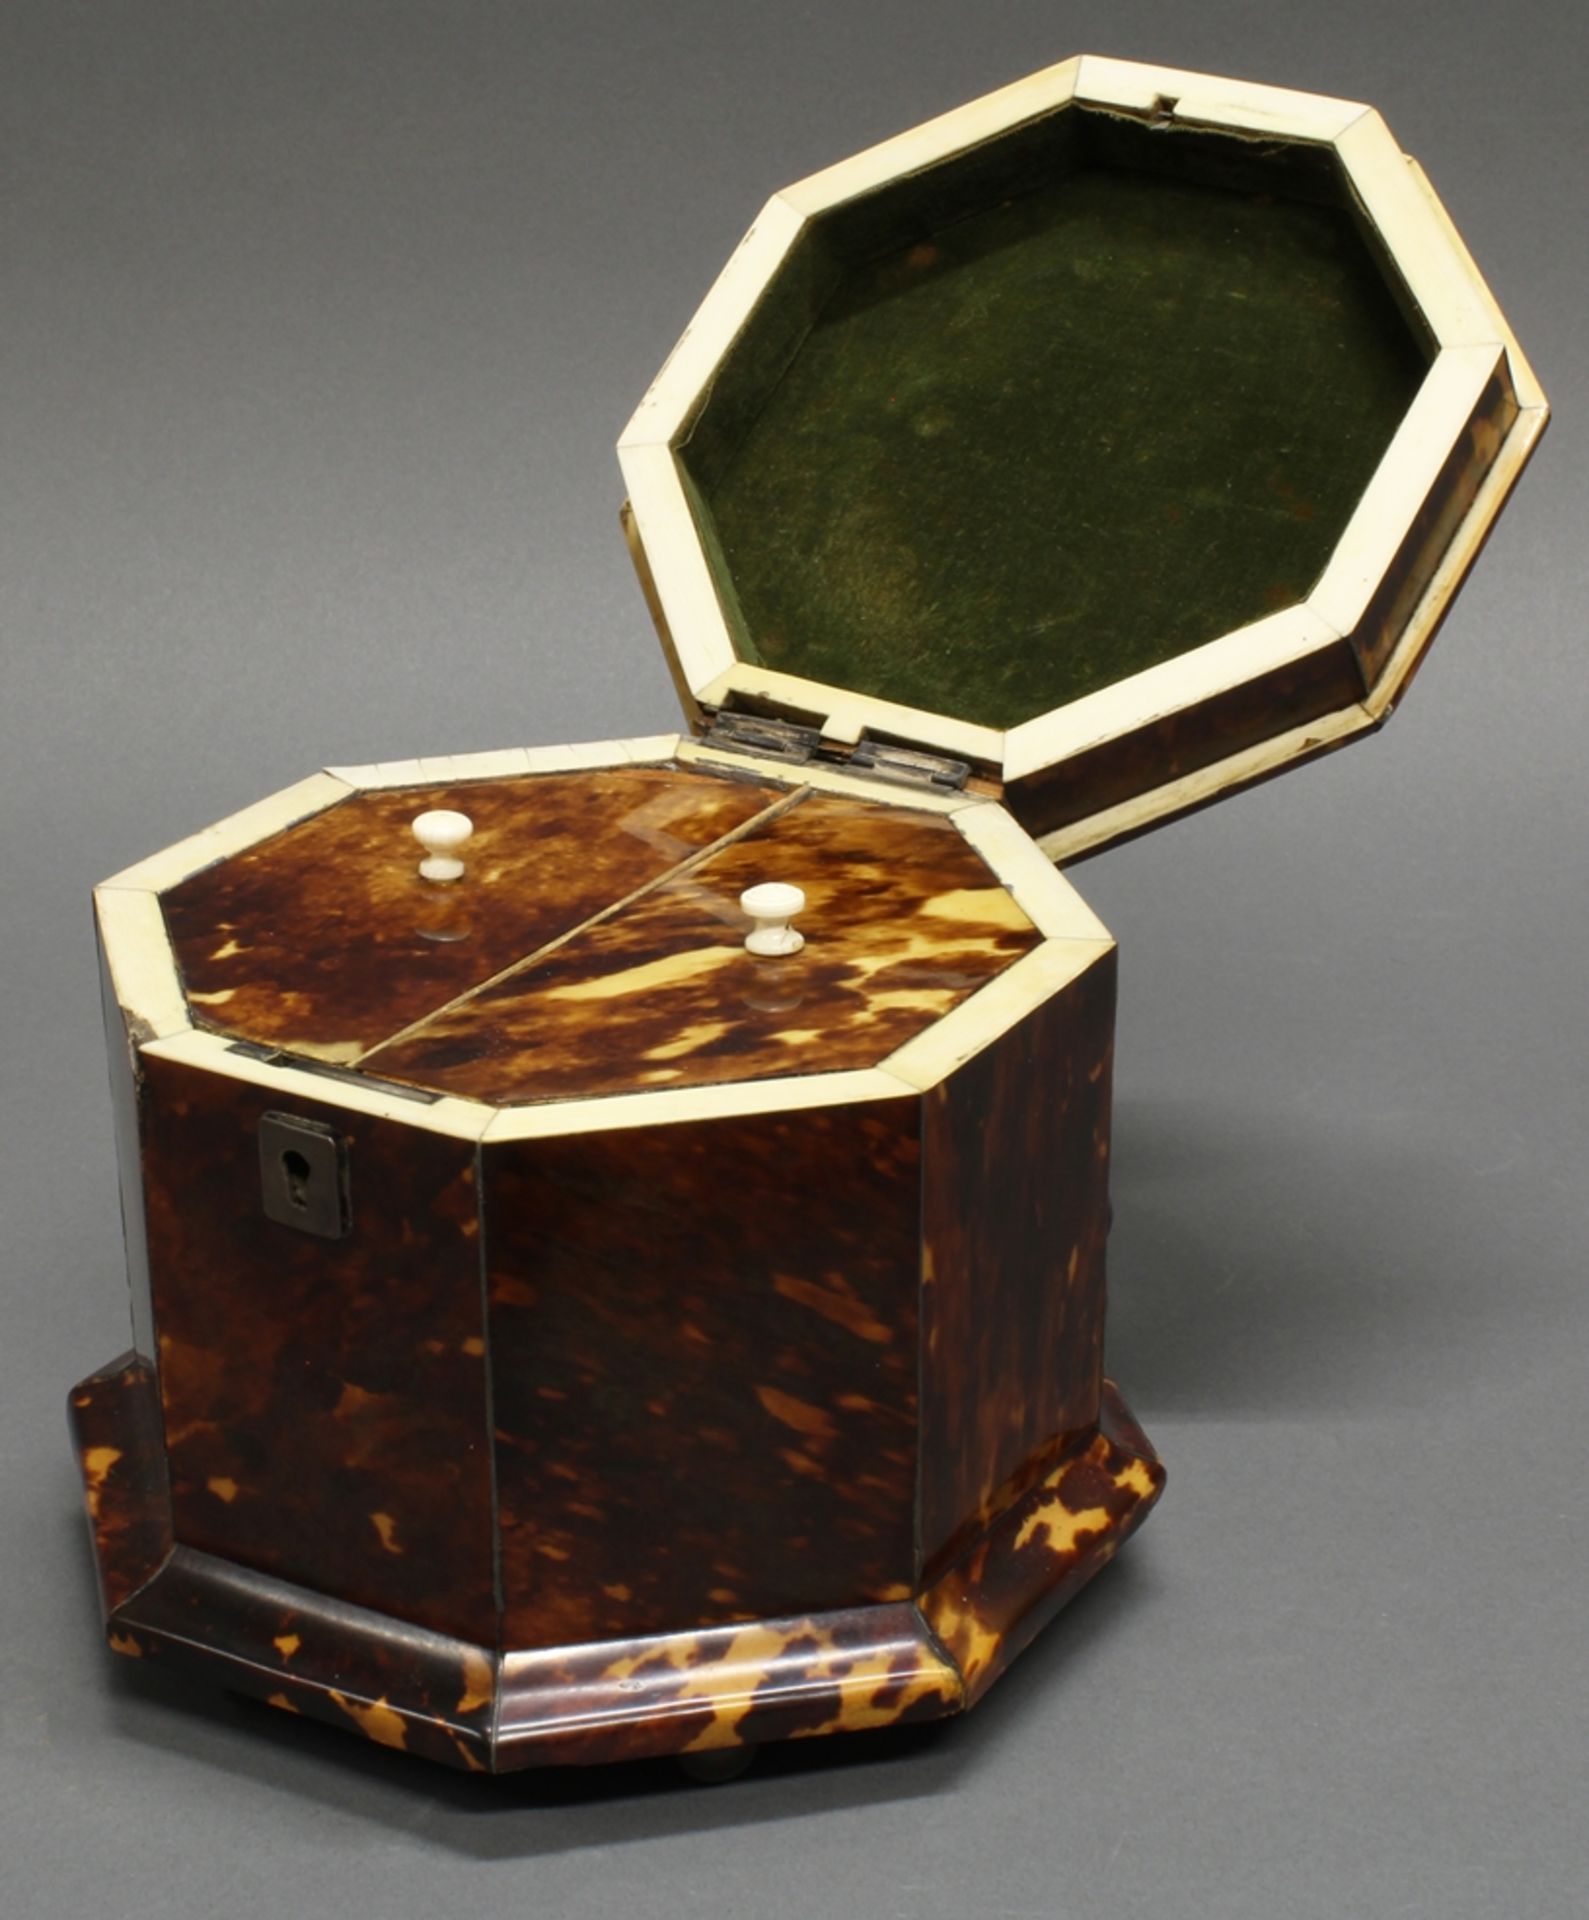 Teeschatulle, 2. Hälfte 19. Jh., Schildpattdekor, Elfenbeinzier, oktagonale Form, innen zwei Deckel - Bild 2 aus 2